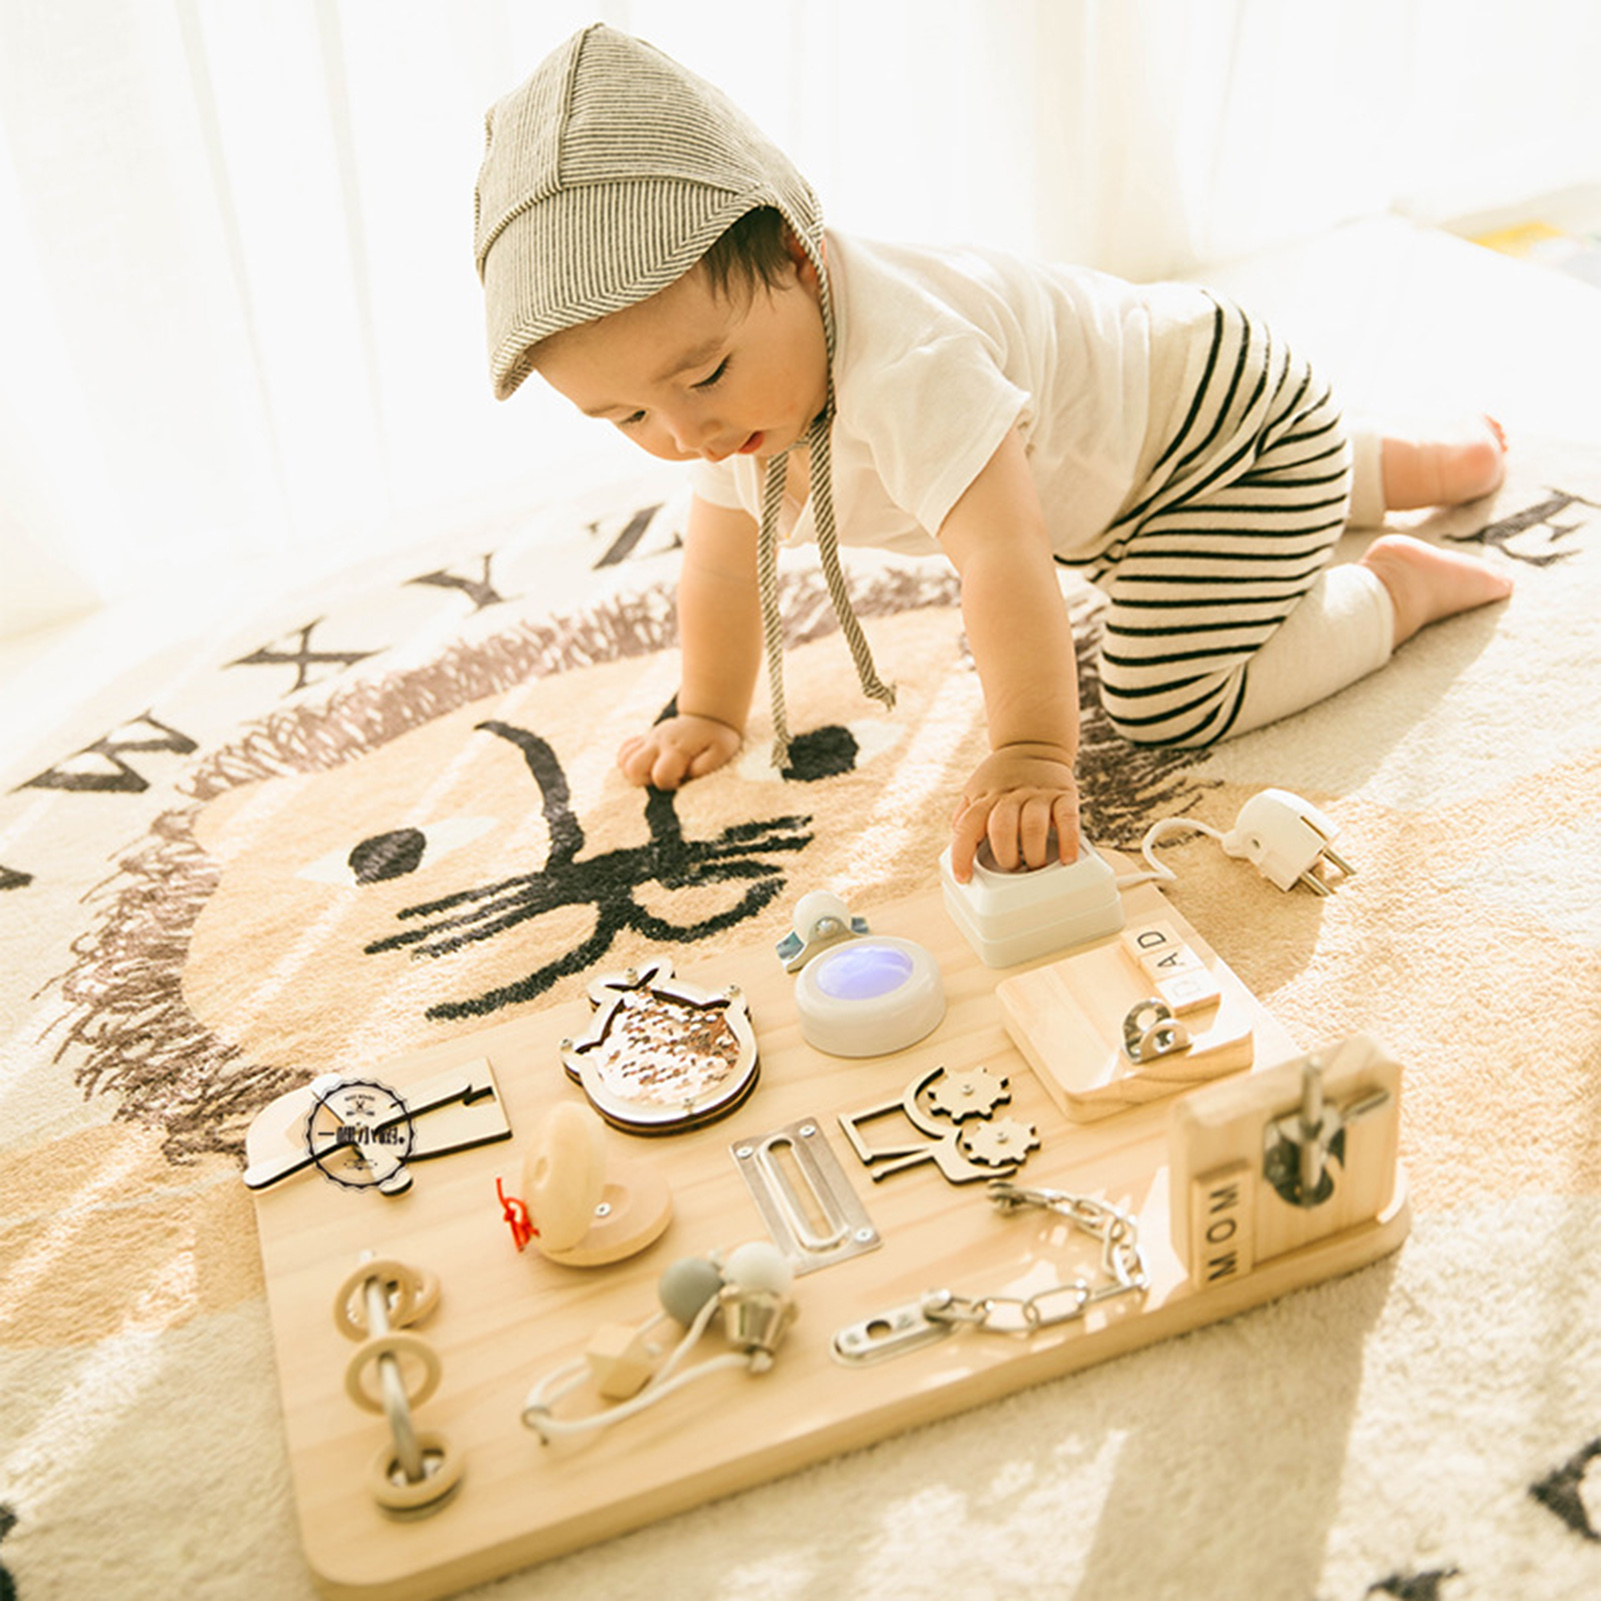 Planche Montessori d'activités pour enfant - Un petit génie